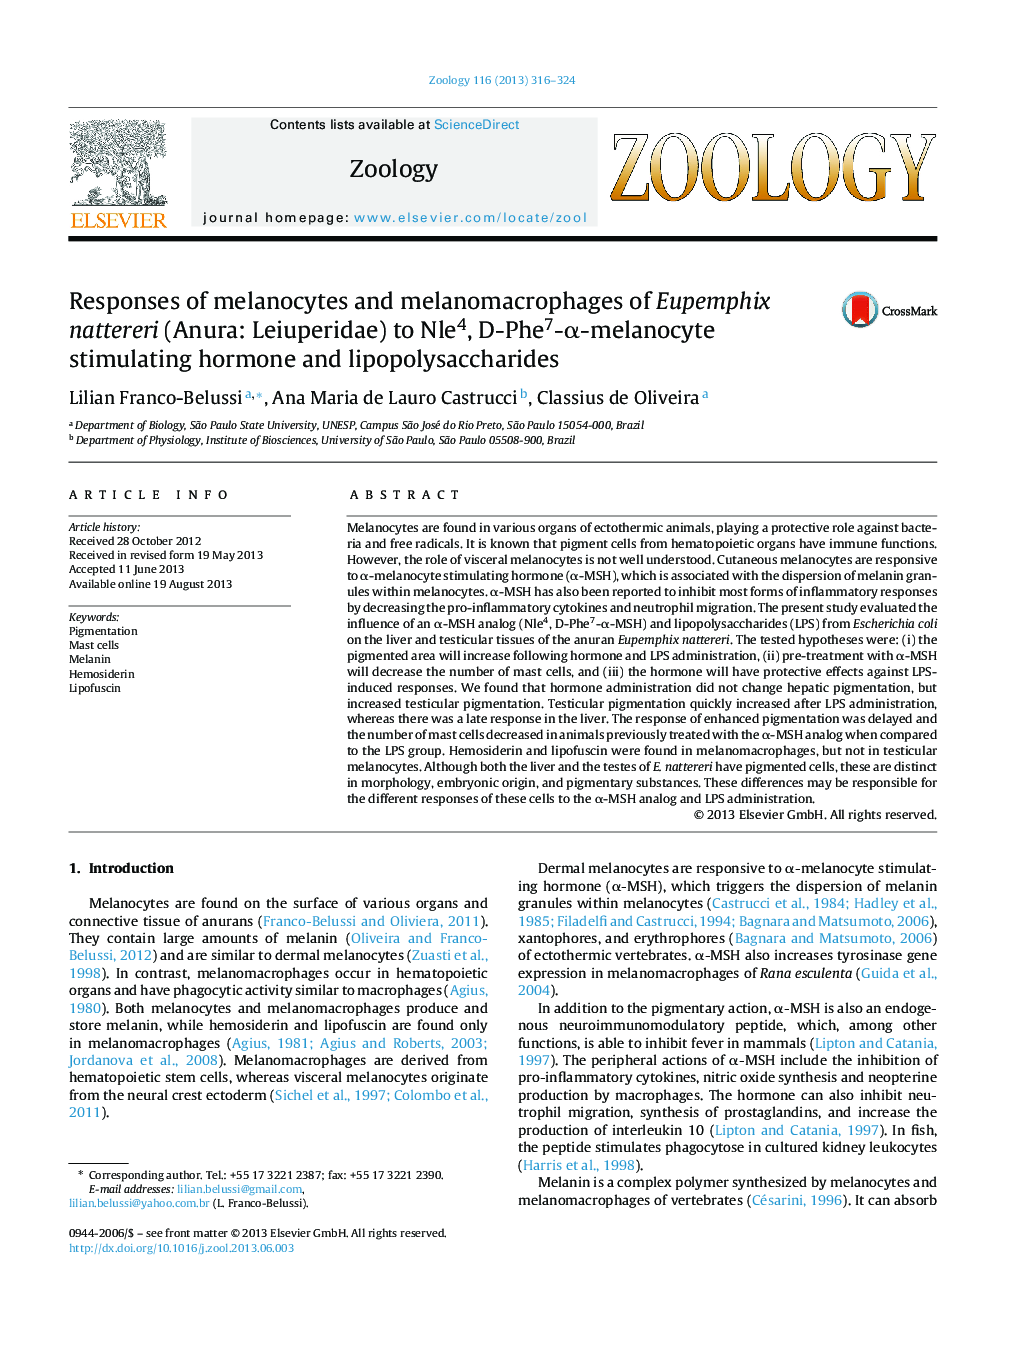 Responses of melanocytes and melanomacrophages of Eupemphix nattereri (Anura: Leiuperidae) to Nle4, D-Phe7-Î±-melanocyte stimulating hormone and lipopolysaccharides